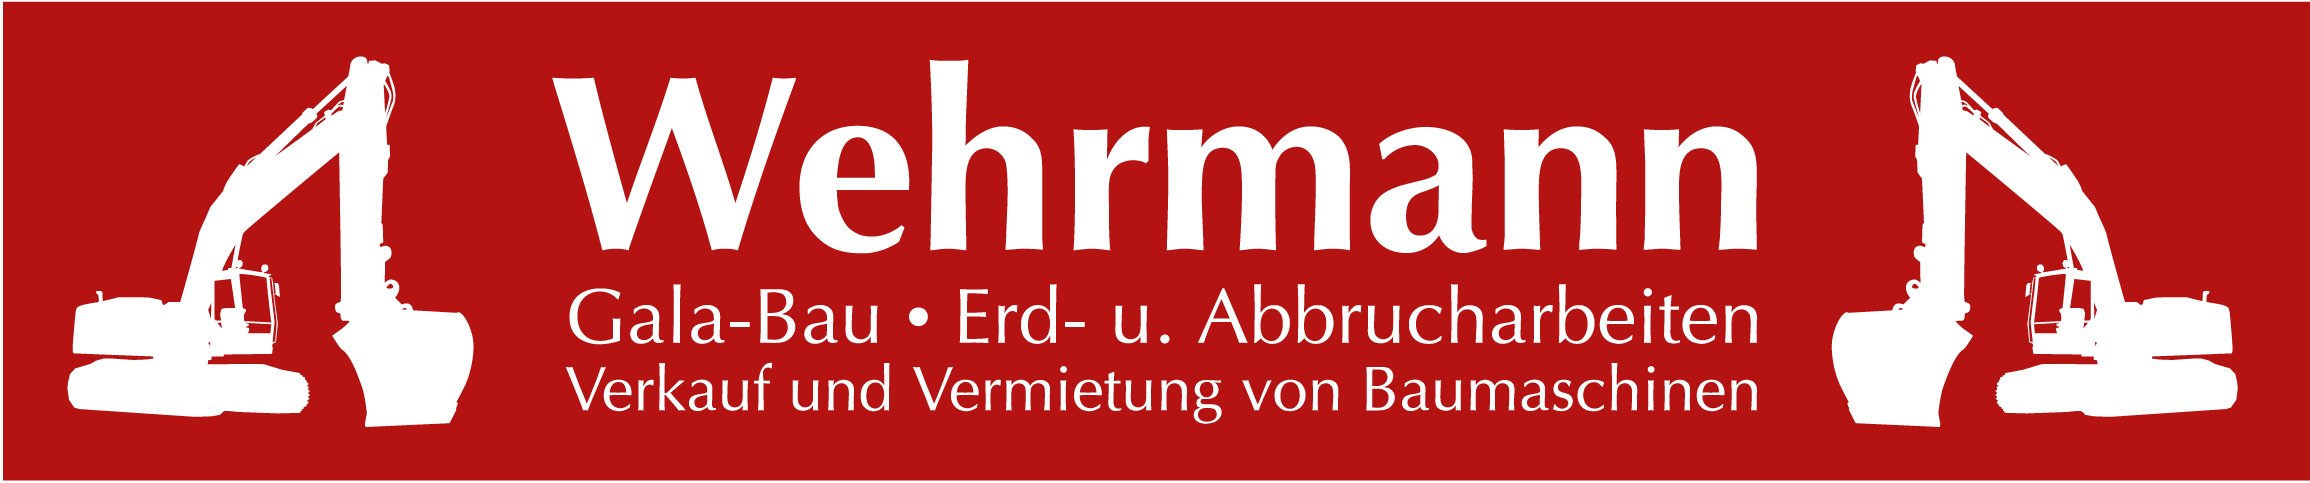 wehrmann auf rot logo